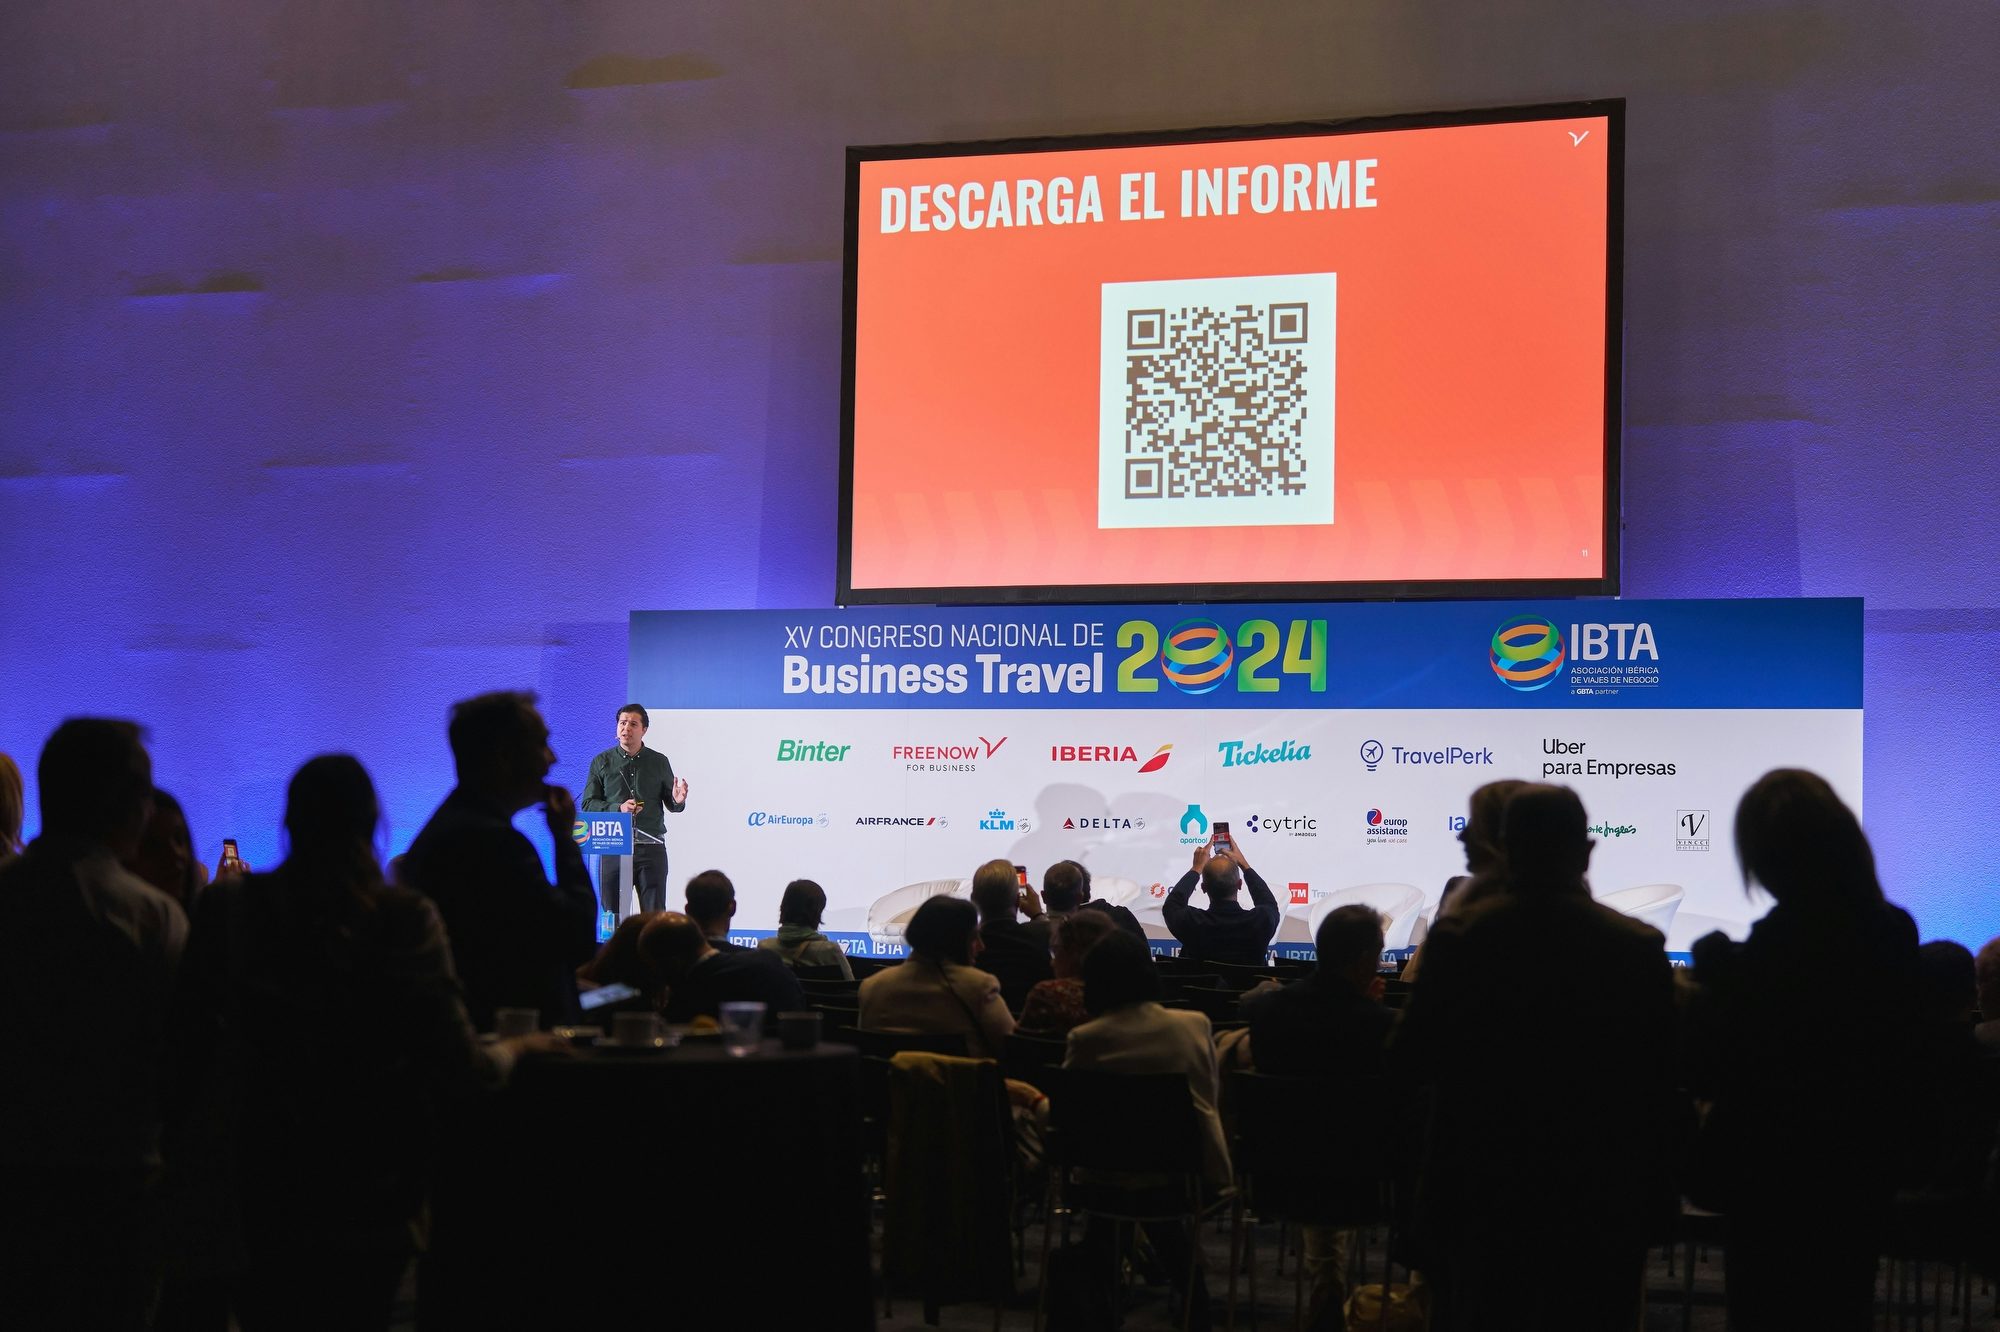 FREENOW for Business presenta el informe elaborado con GBTA sobre viajes de negocios en el evento de IBTA en Madrid